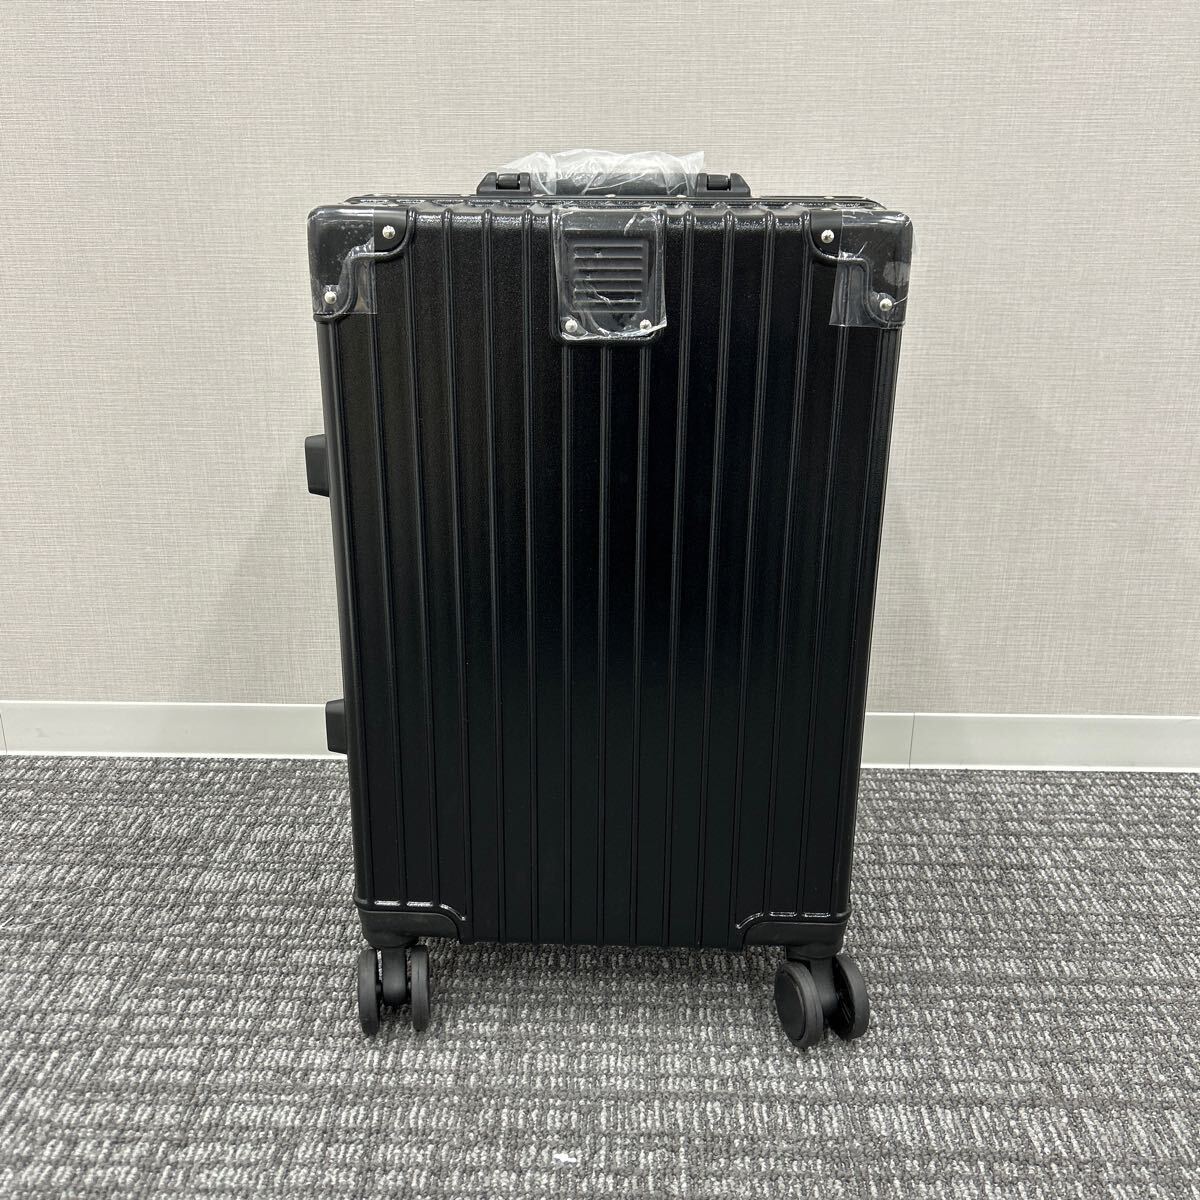  Carry кейс чемодан машина внутри принесенный 40L дорожная сумка черный 